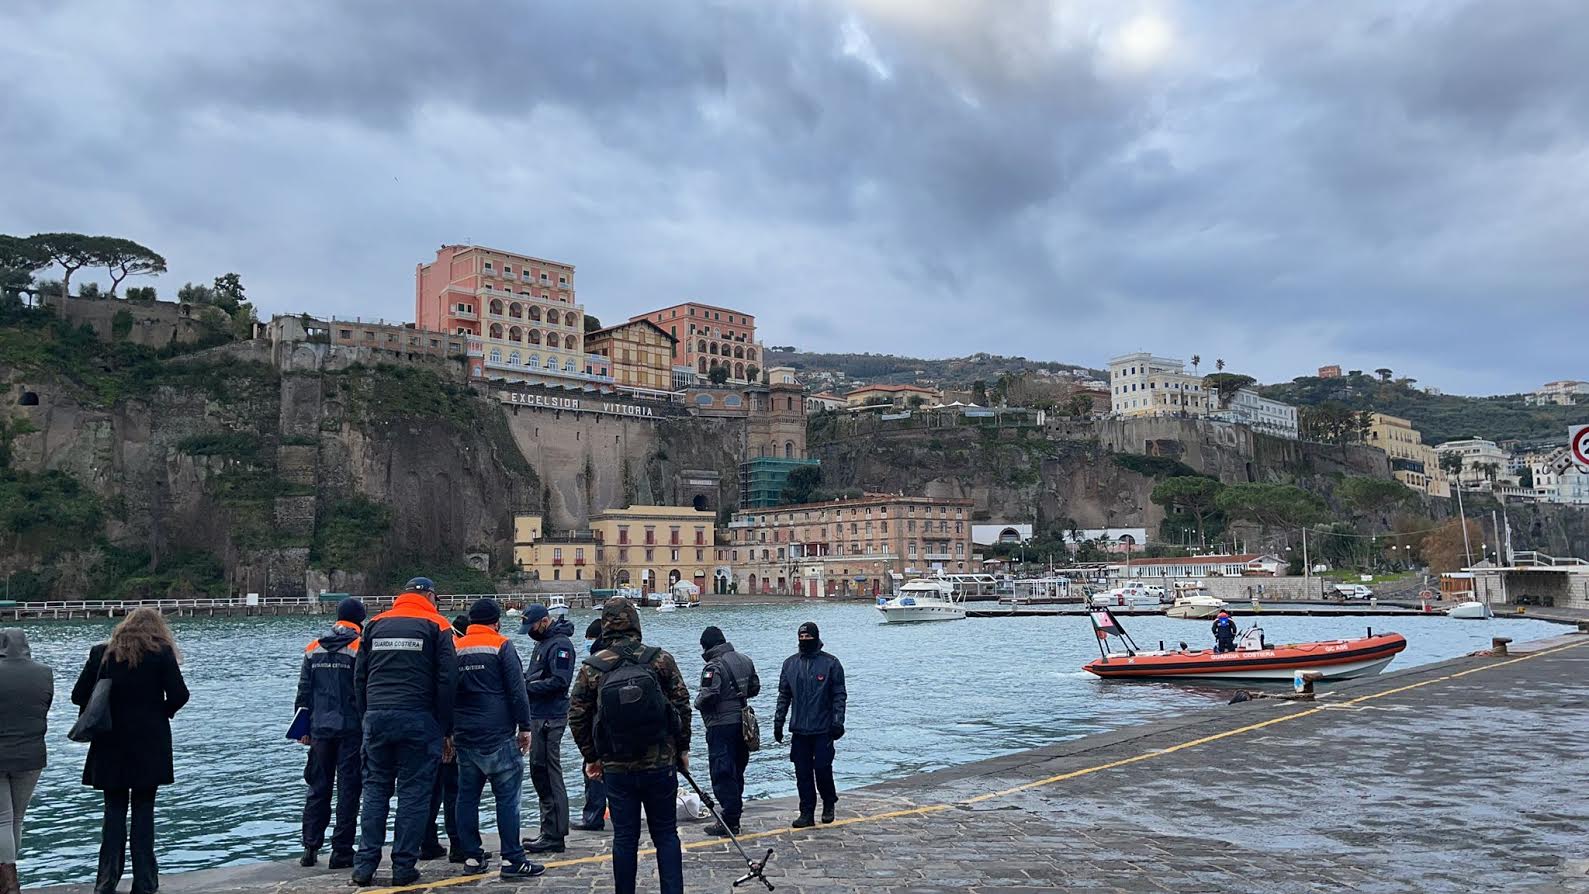 La balena spiaggiata a Sorrento trasferita a Napoli per necroscopia